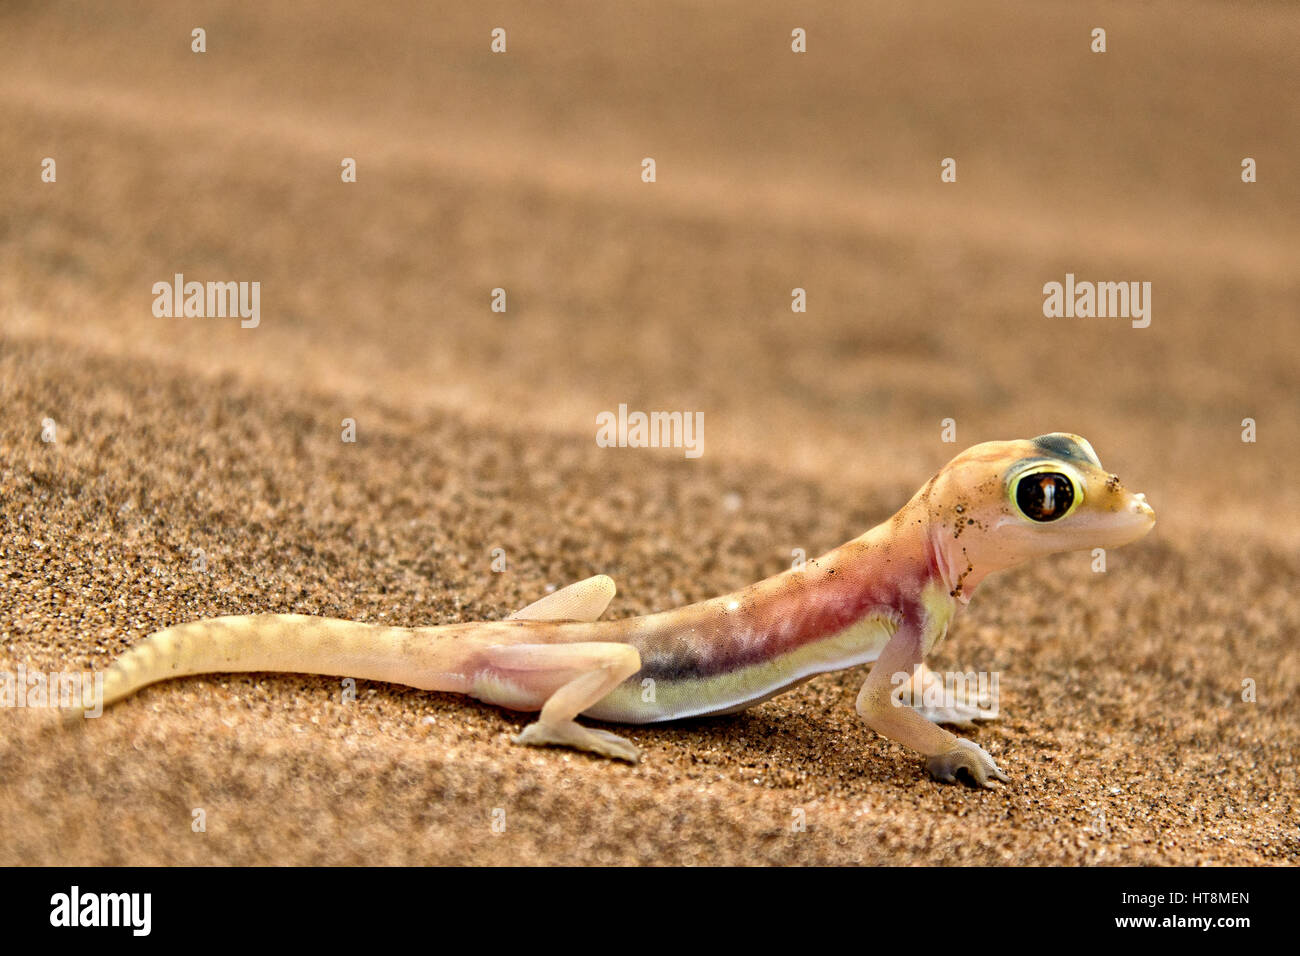 Chauds et colorés Palmato Gecko sur les sables du désert du Namib - vue latérale Banque D'Images